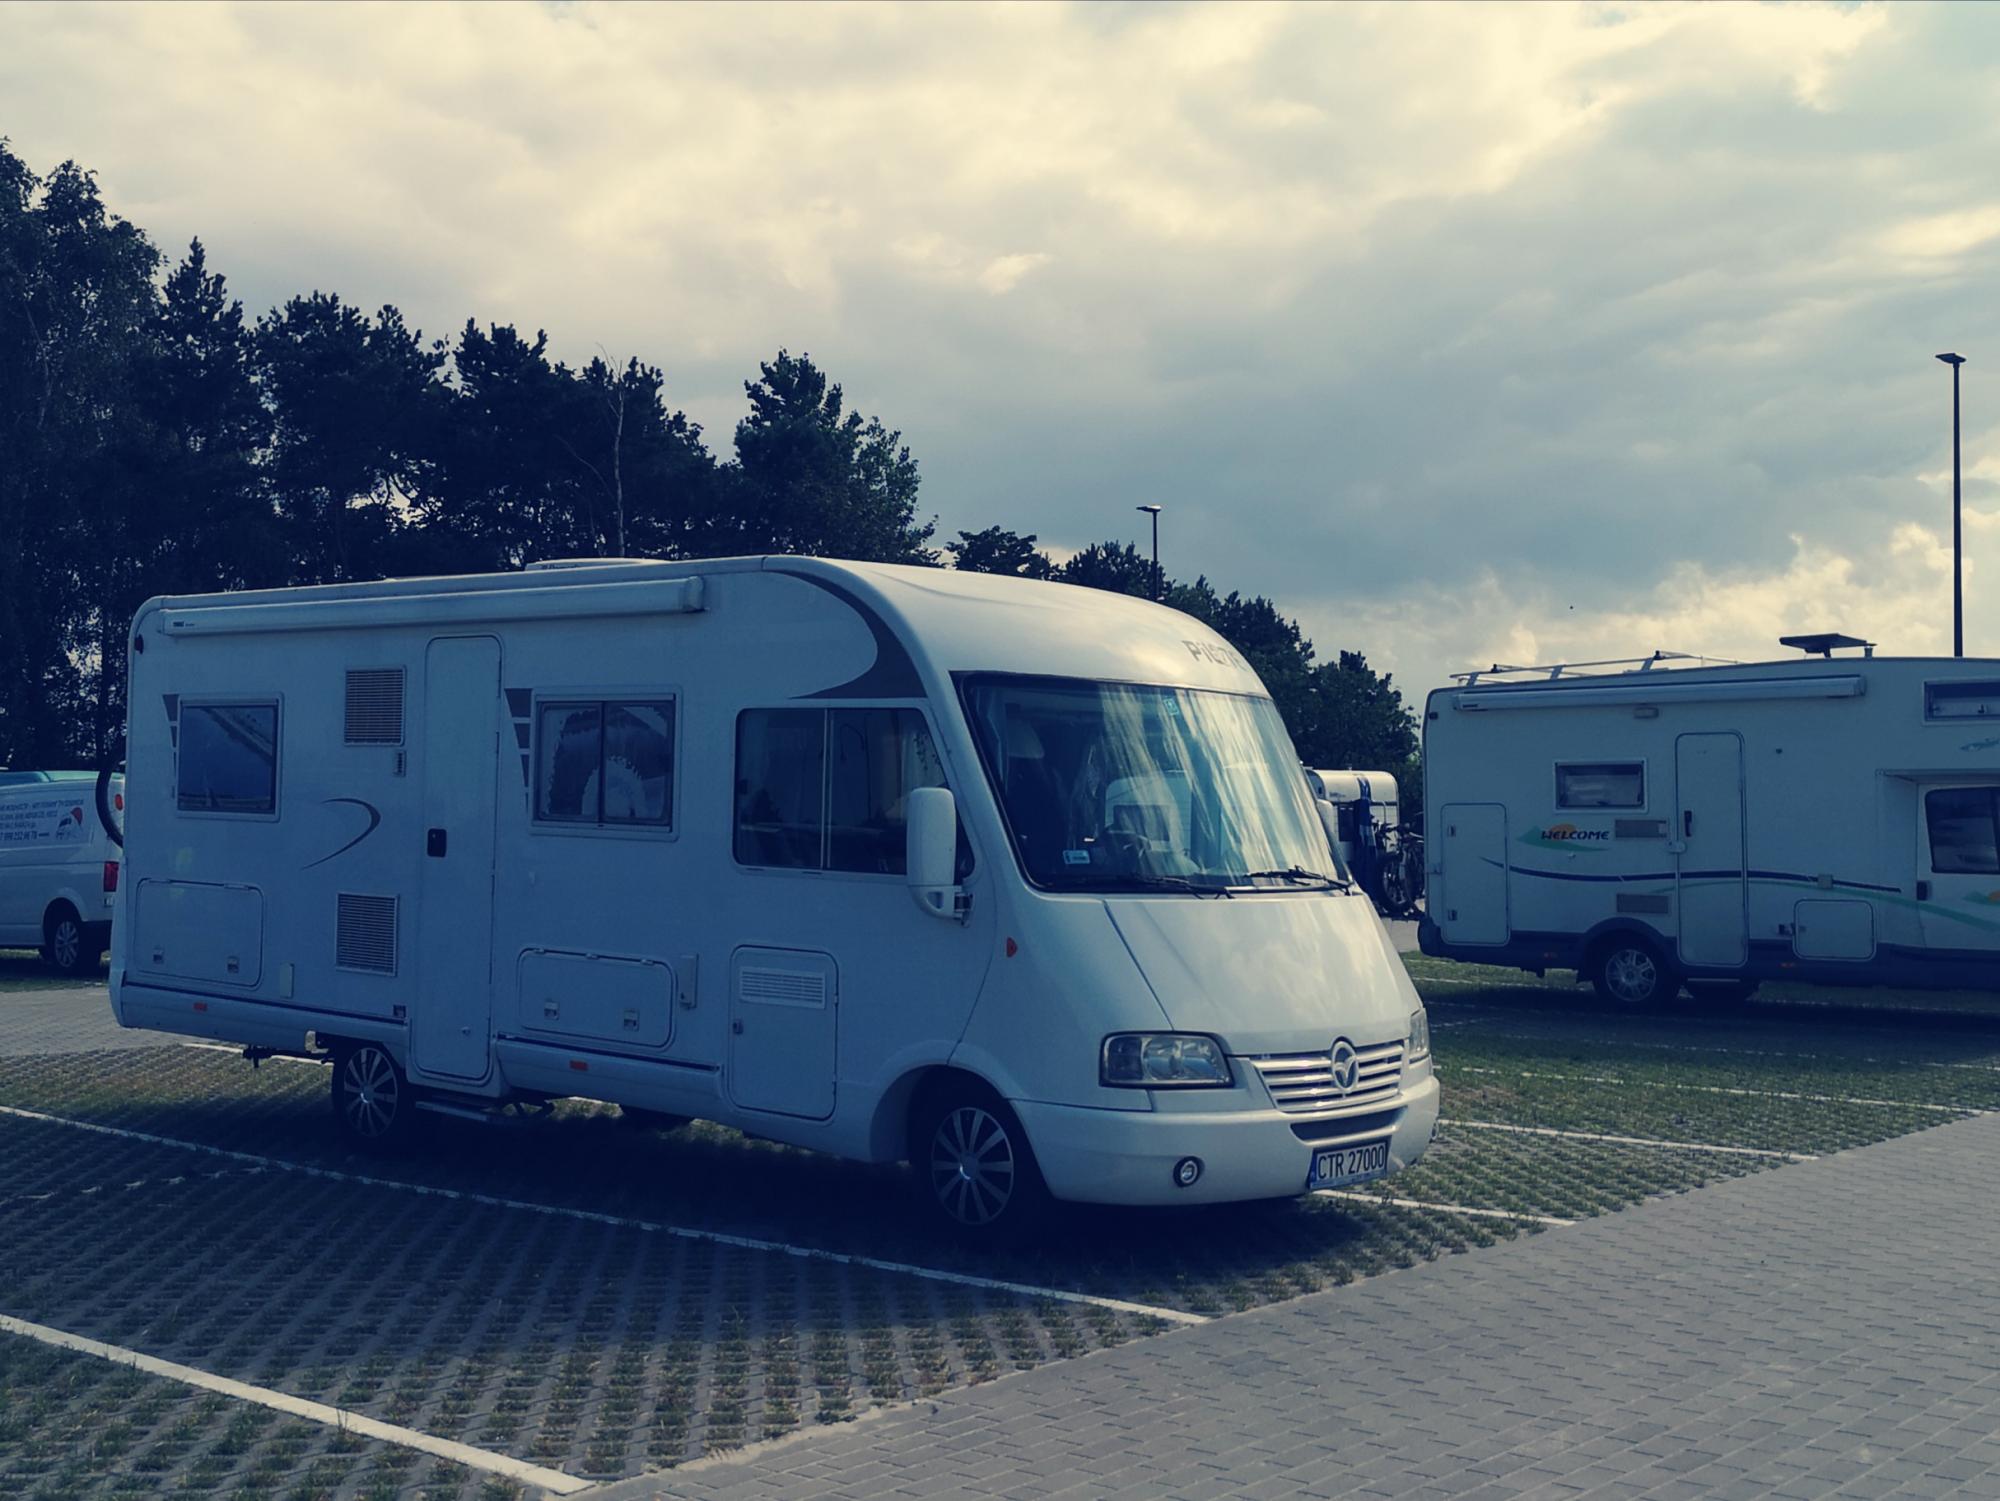 Leverkusen - outdoor camping